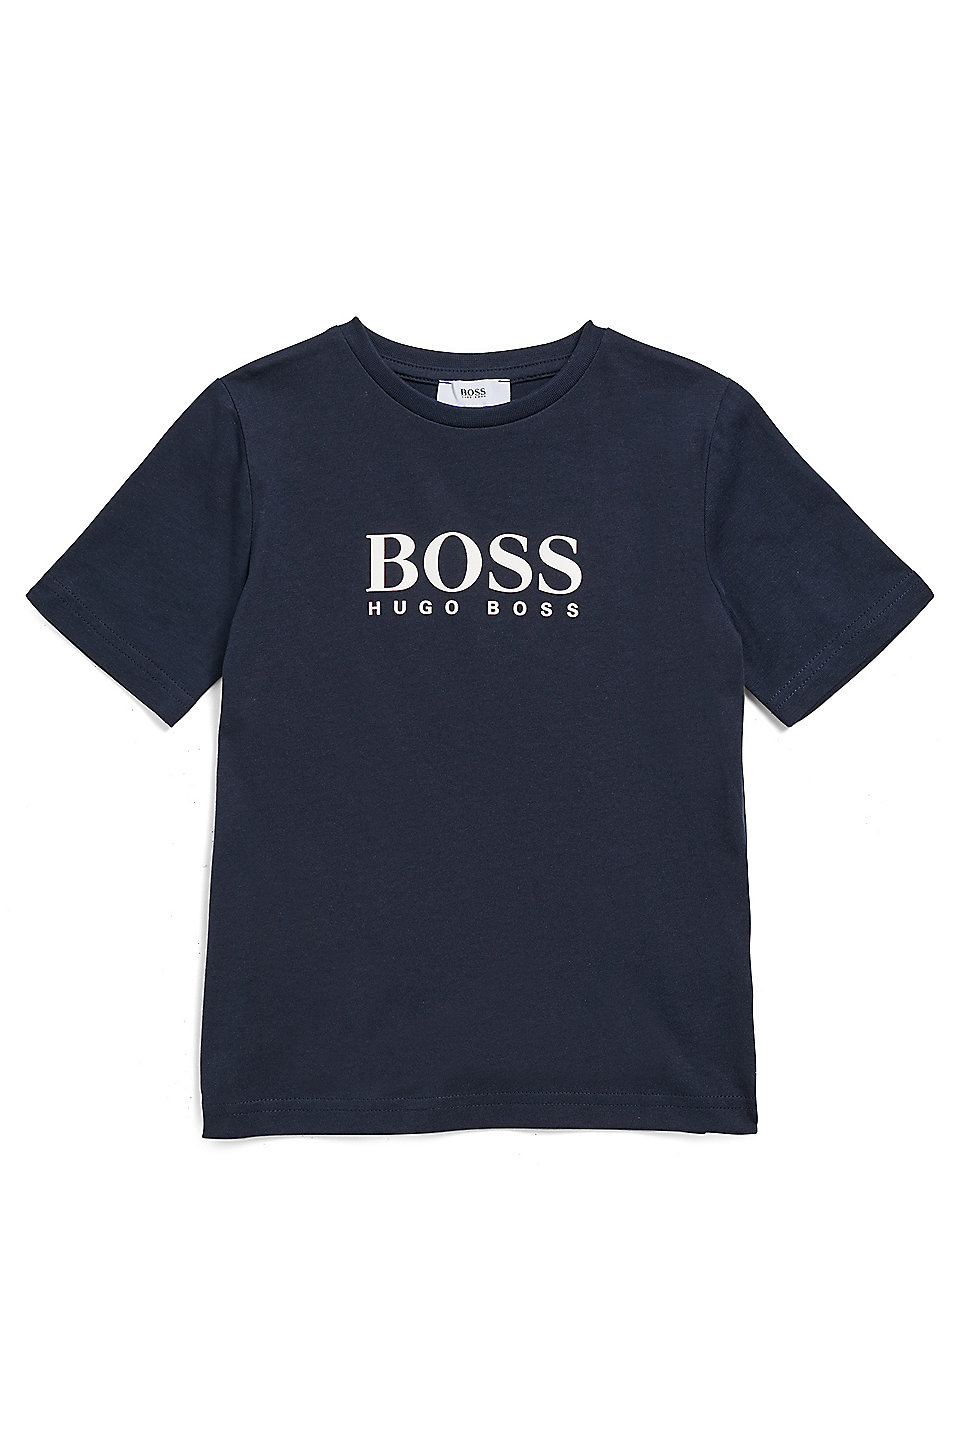 Slogan t shirt Gold Slogan Little Boss t shirt, Childrens Kids t shirt